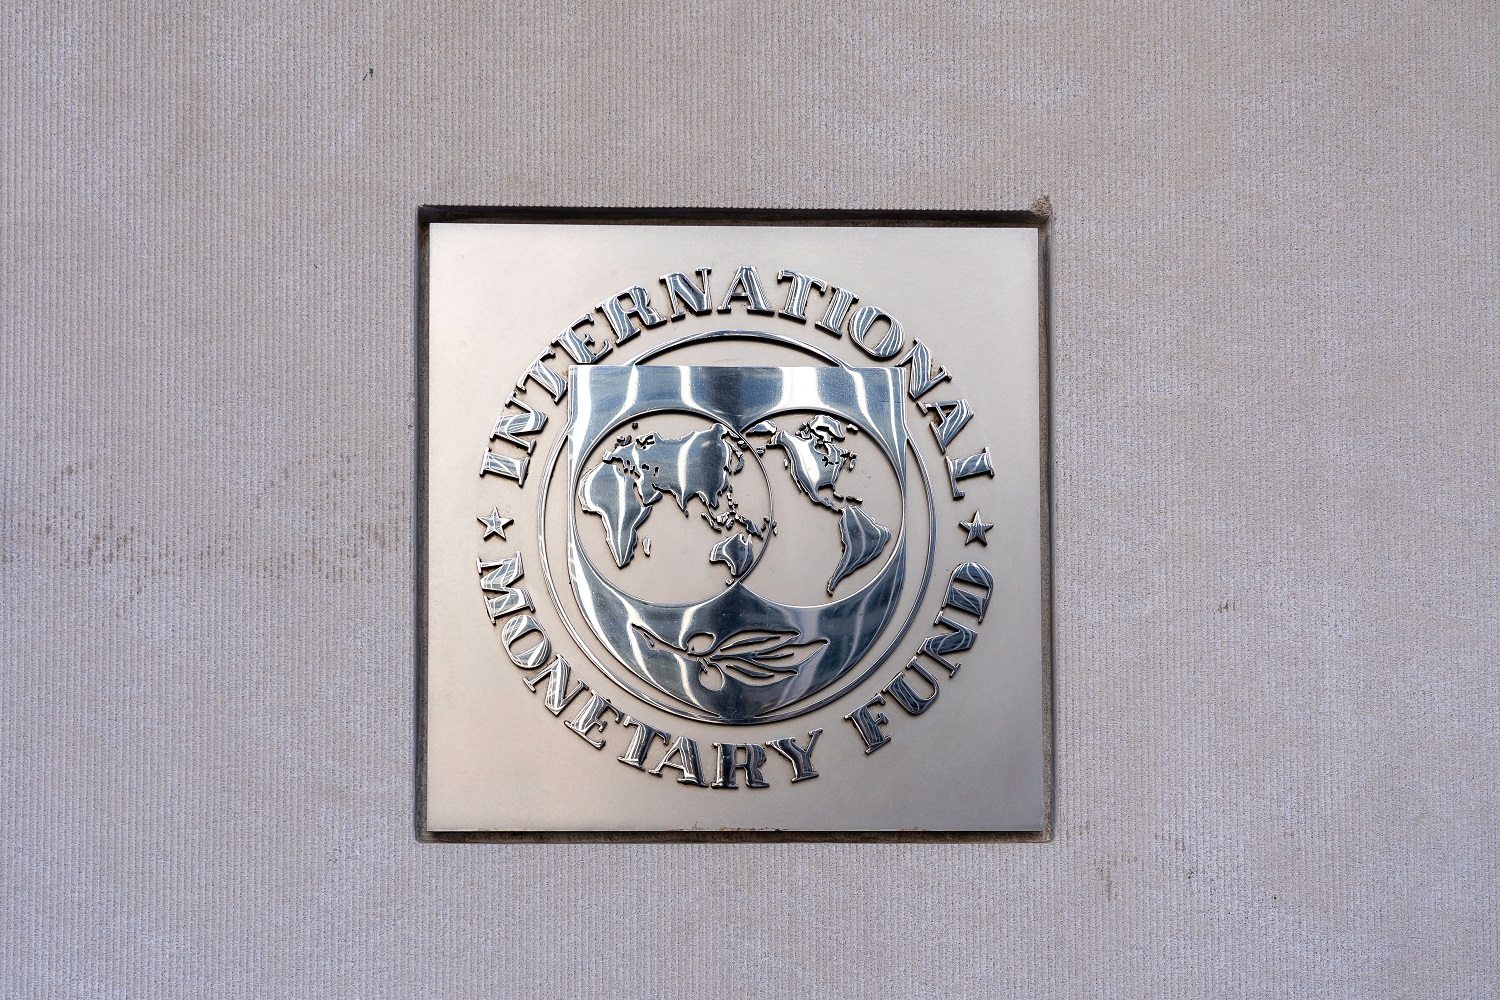 Image of international monetary fund